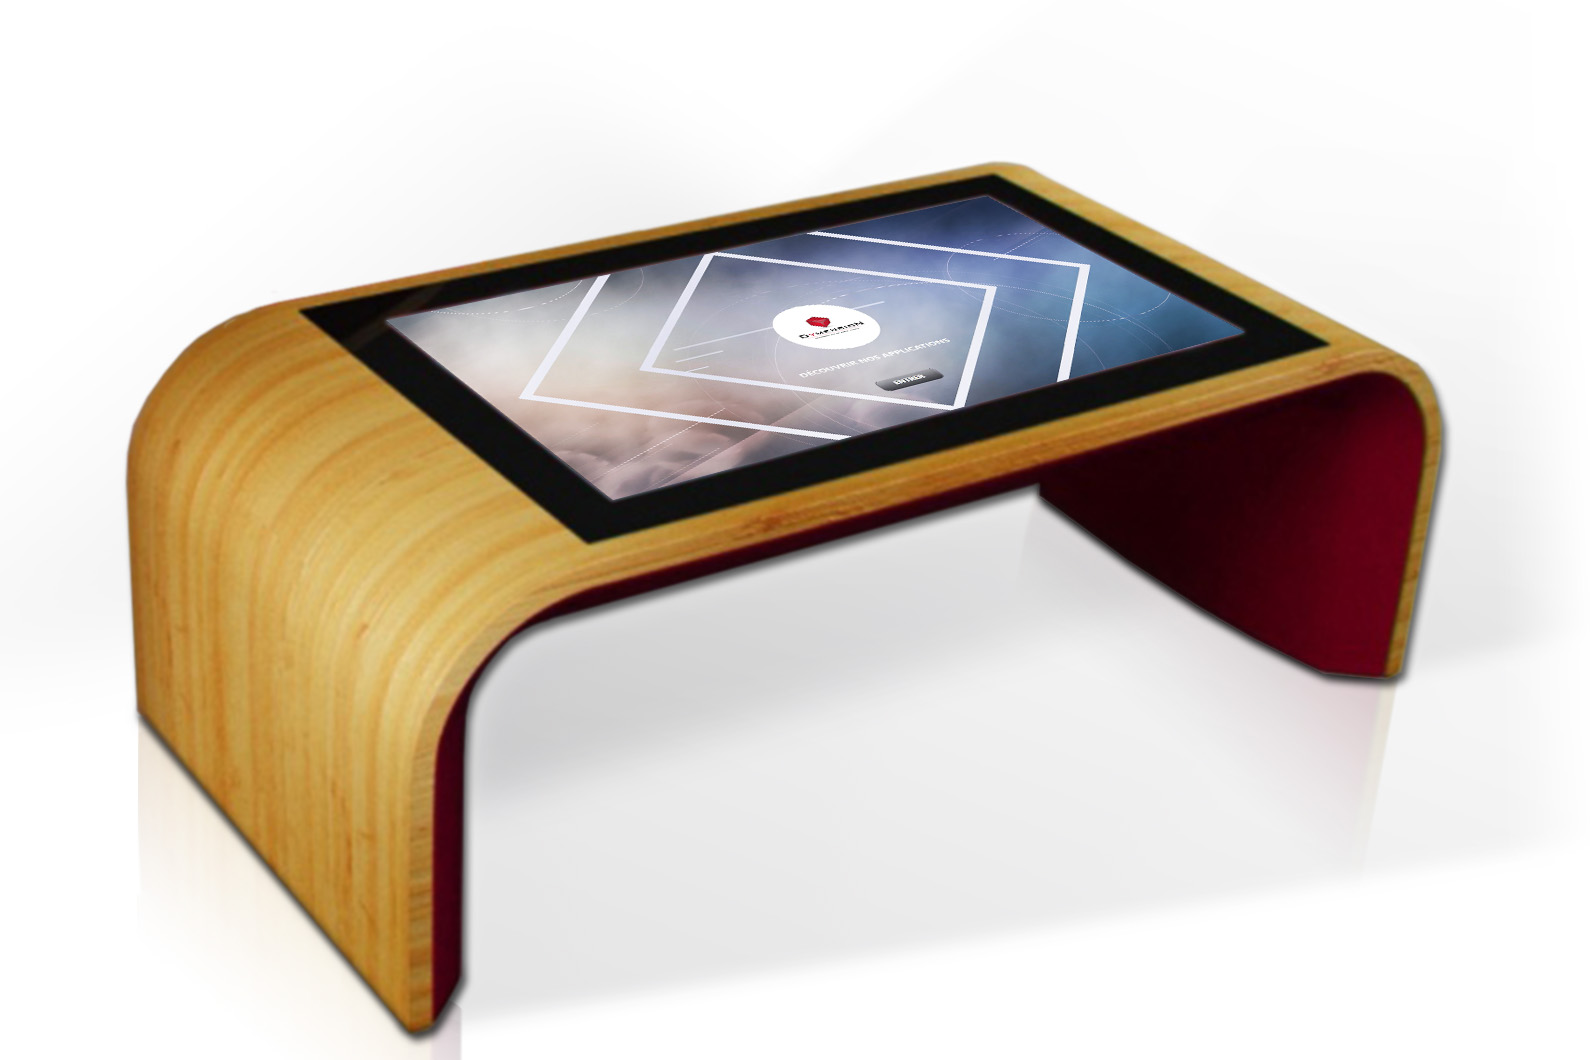 Coosno crée une table basse ultra connectée à installer chez vous